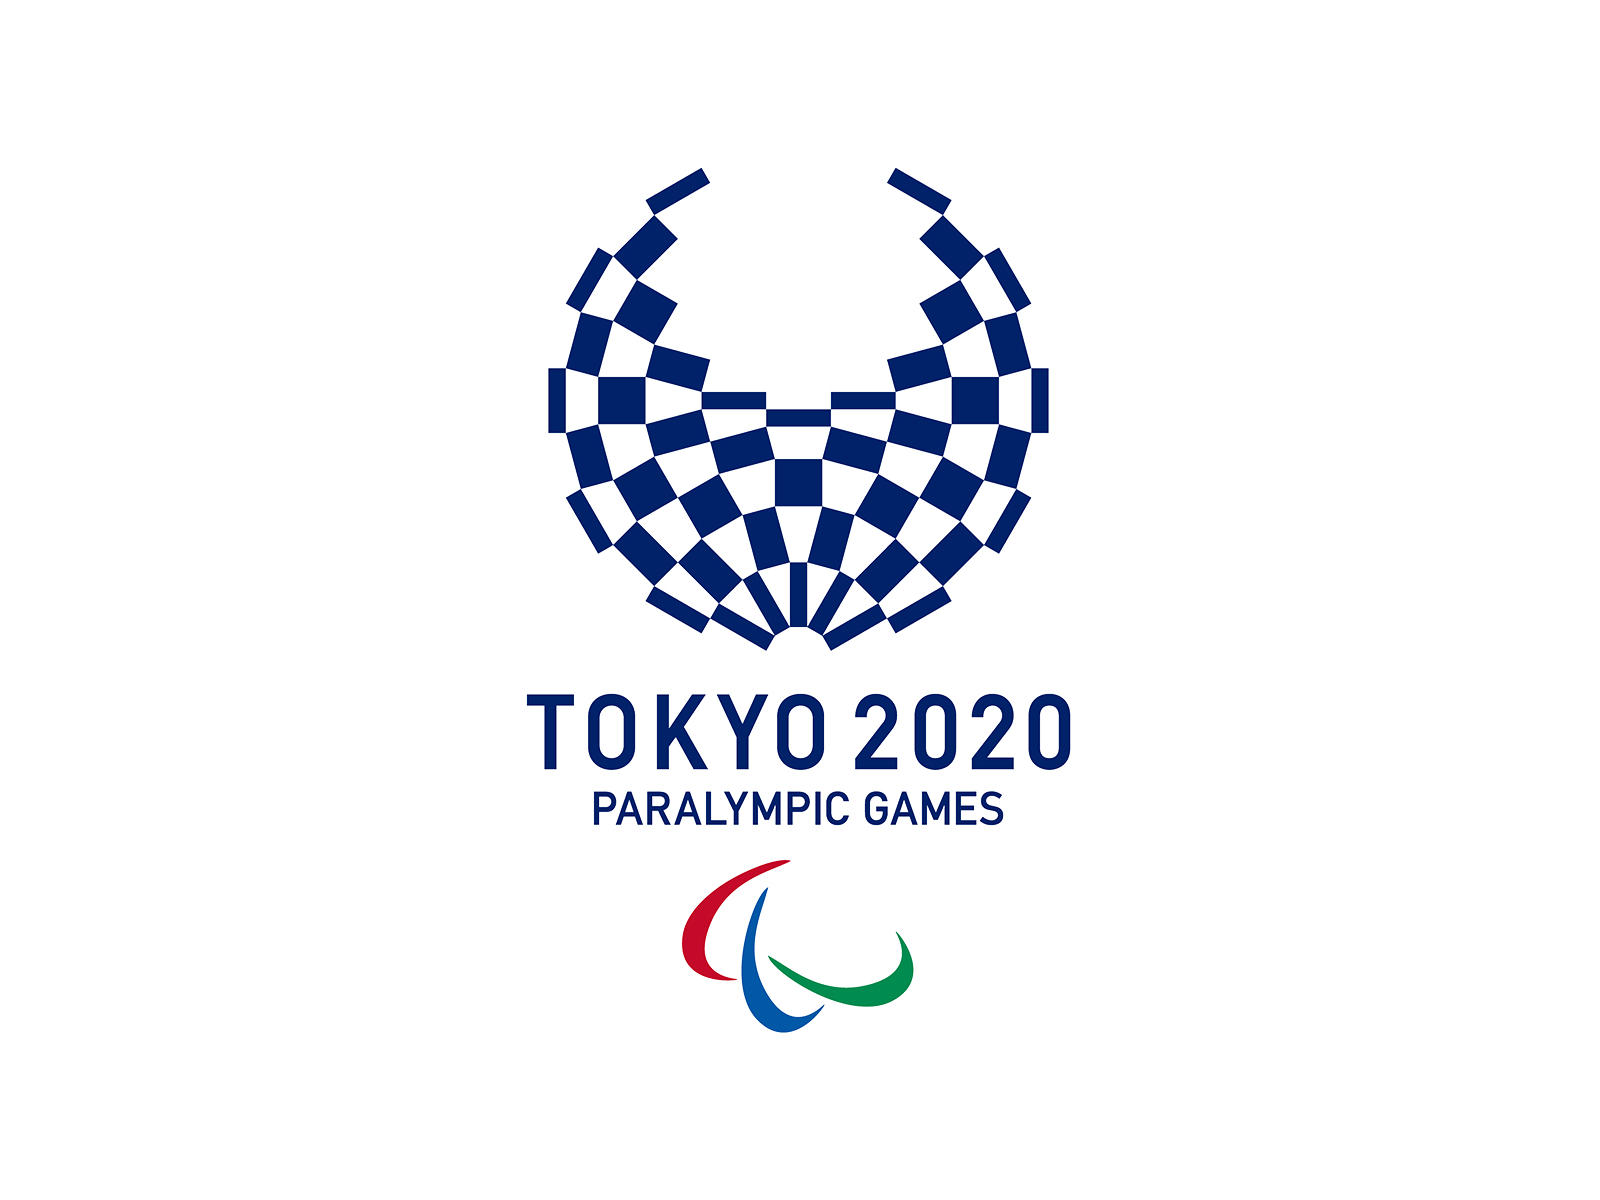 Tokyo 2020 Paralympic games logo